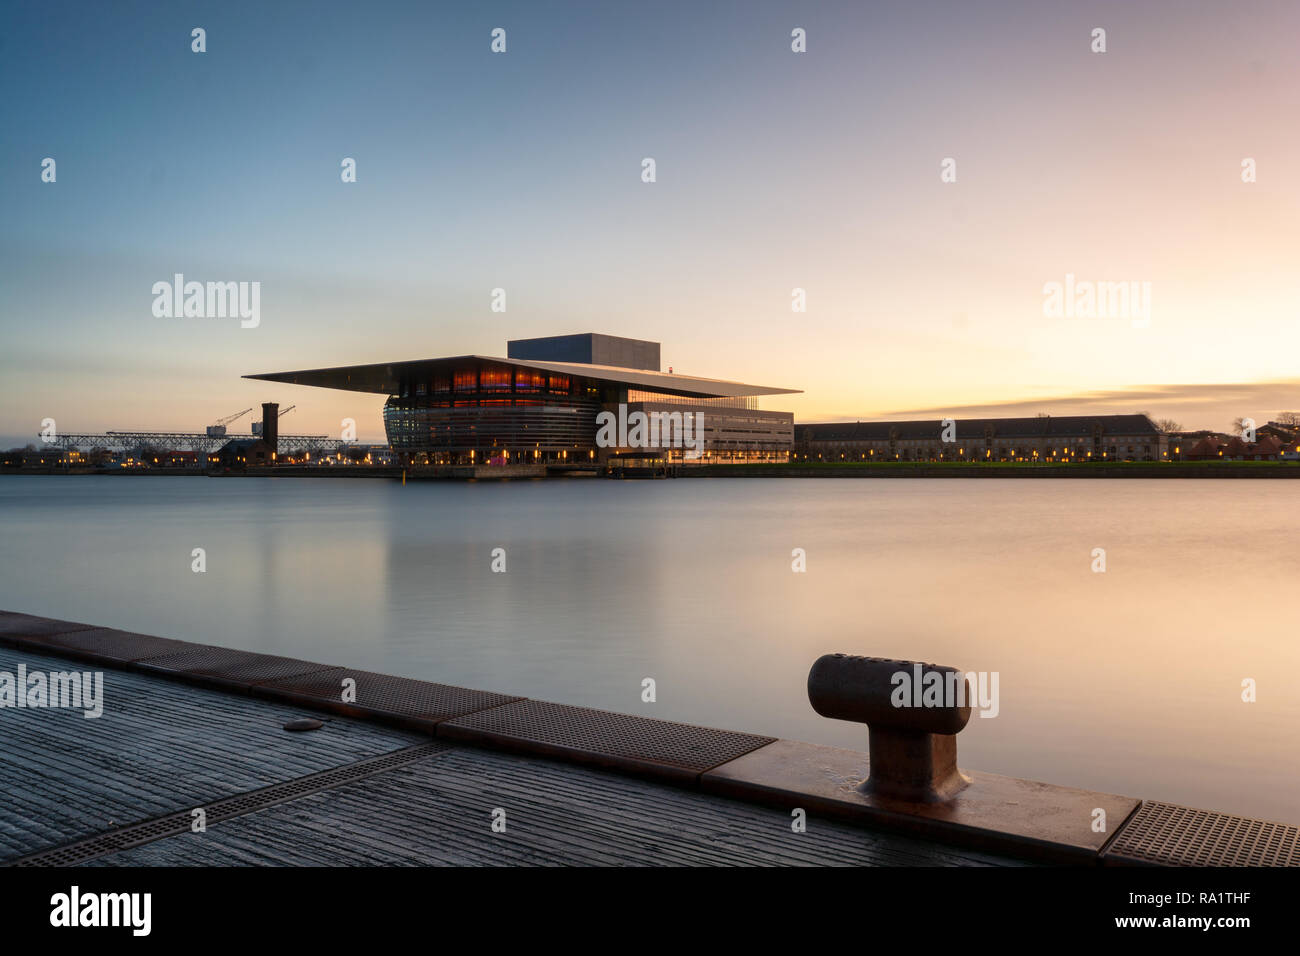 Una lunga esposizione fotografia di Copenaghen opera house Danimarca durante la mattina presto con blu e luce dorata Foto Stock